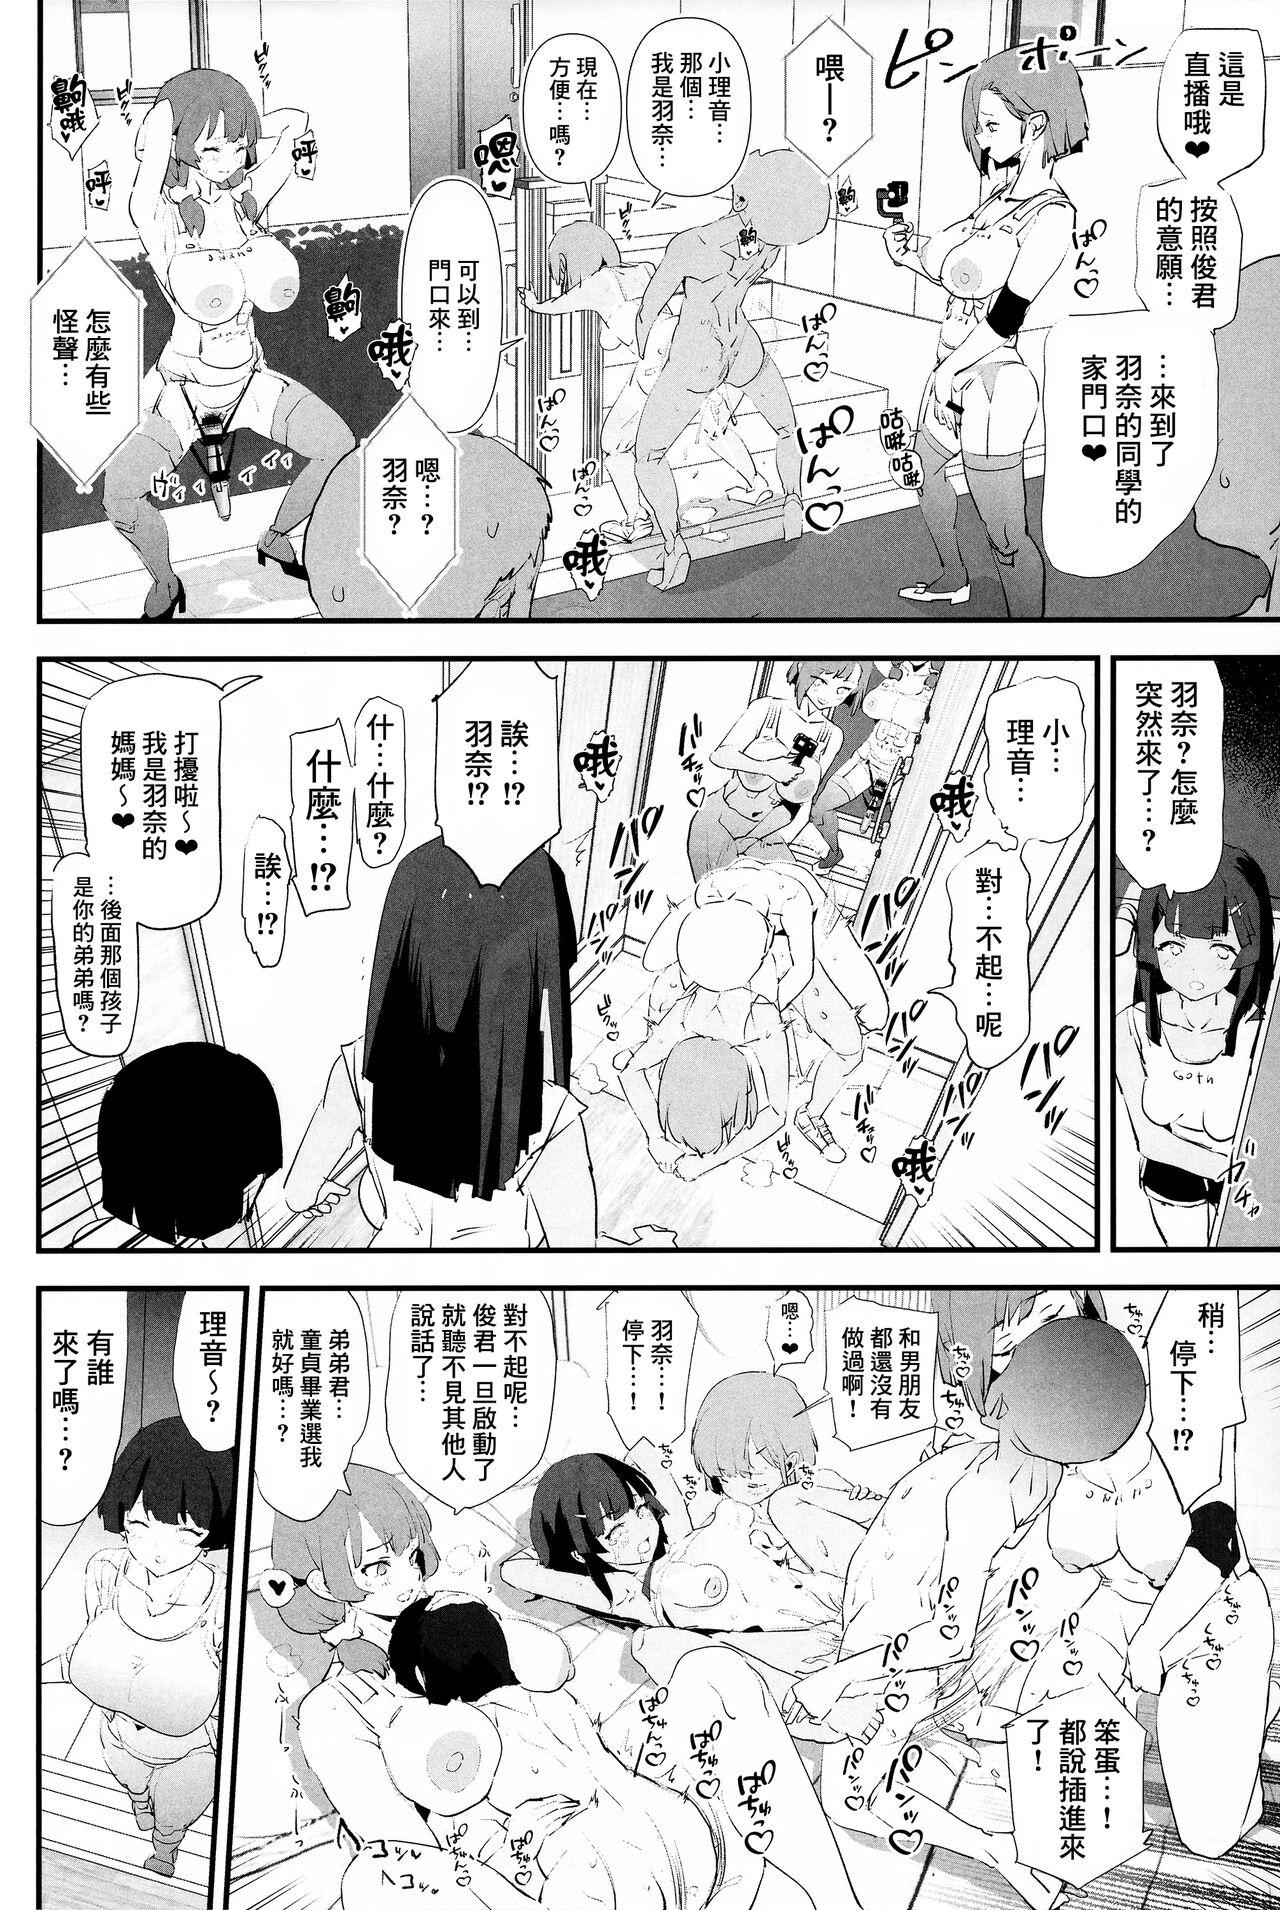 Mama-san Volley de Mama Onaho Kaimakusen! + Onaho Gasshuku Joutou! Buchigire Yankee Shigaraki Mia Sanjou! 27